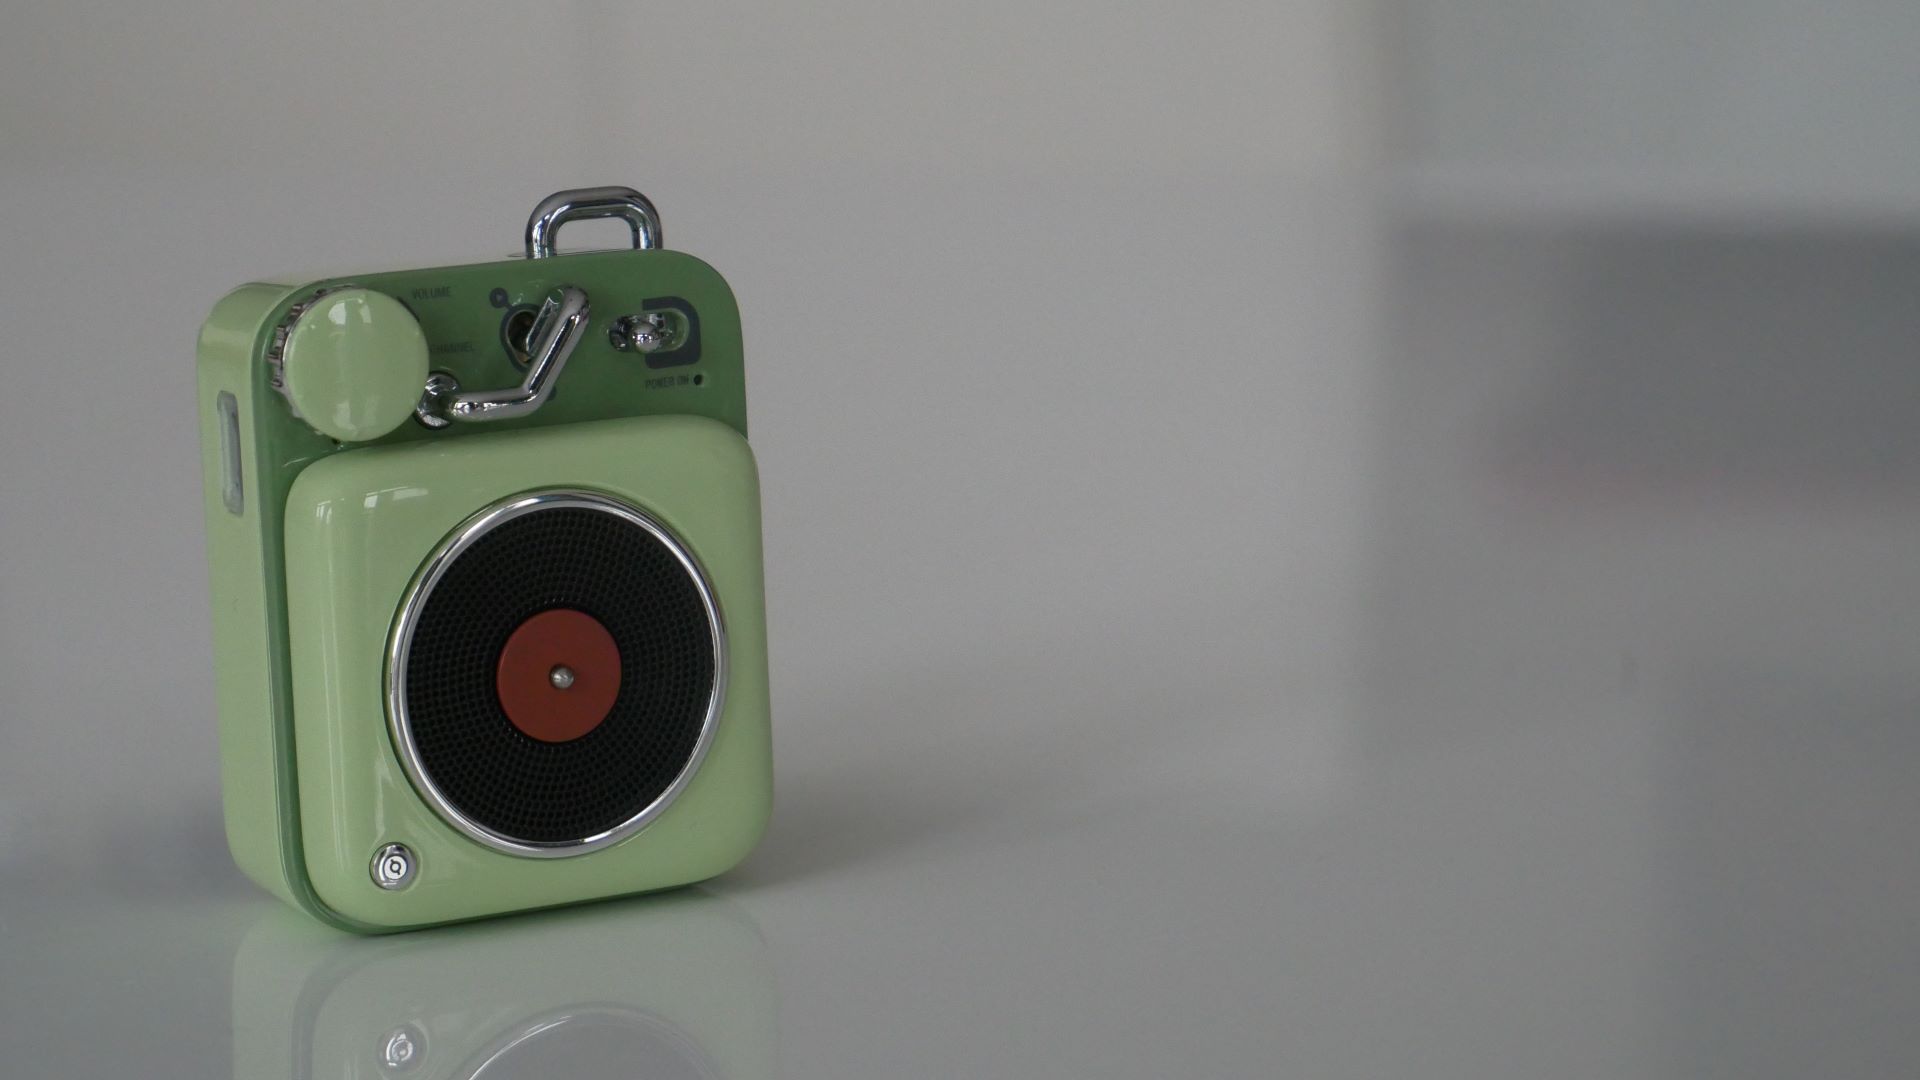 Muzen Button Mini speaker green version on table